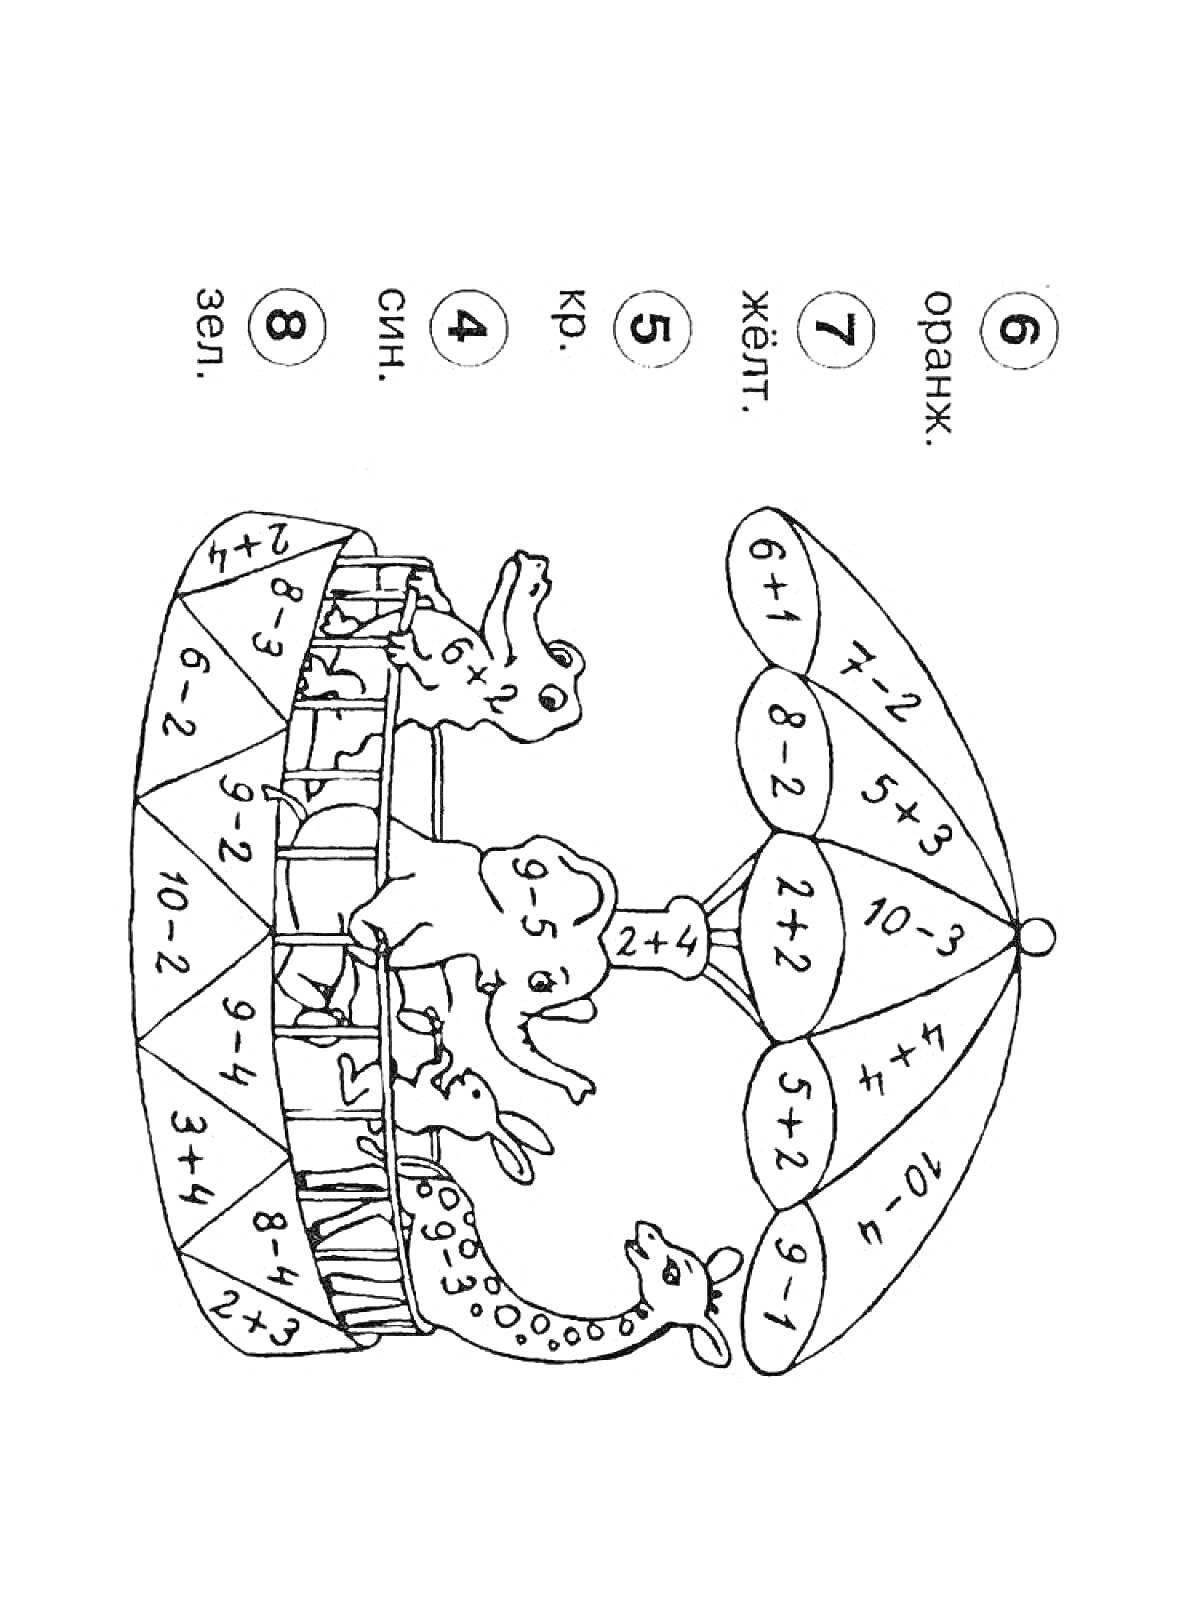 Карусель с жирафами, слоном и львом под зонтиком, расшивка зонтика и основания с математическими примерами